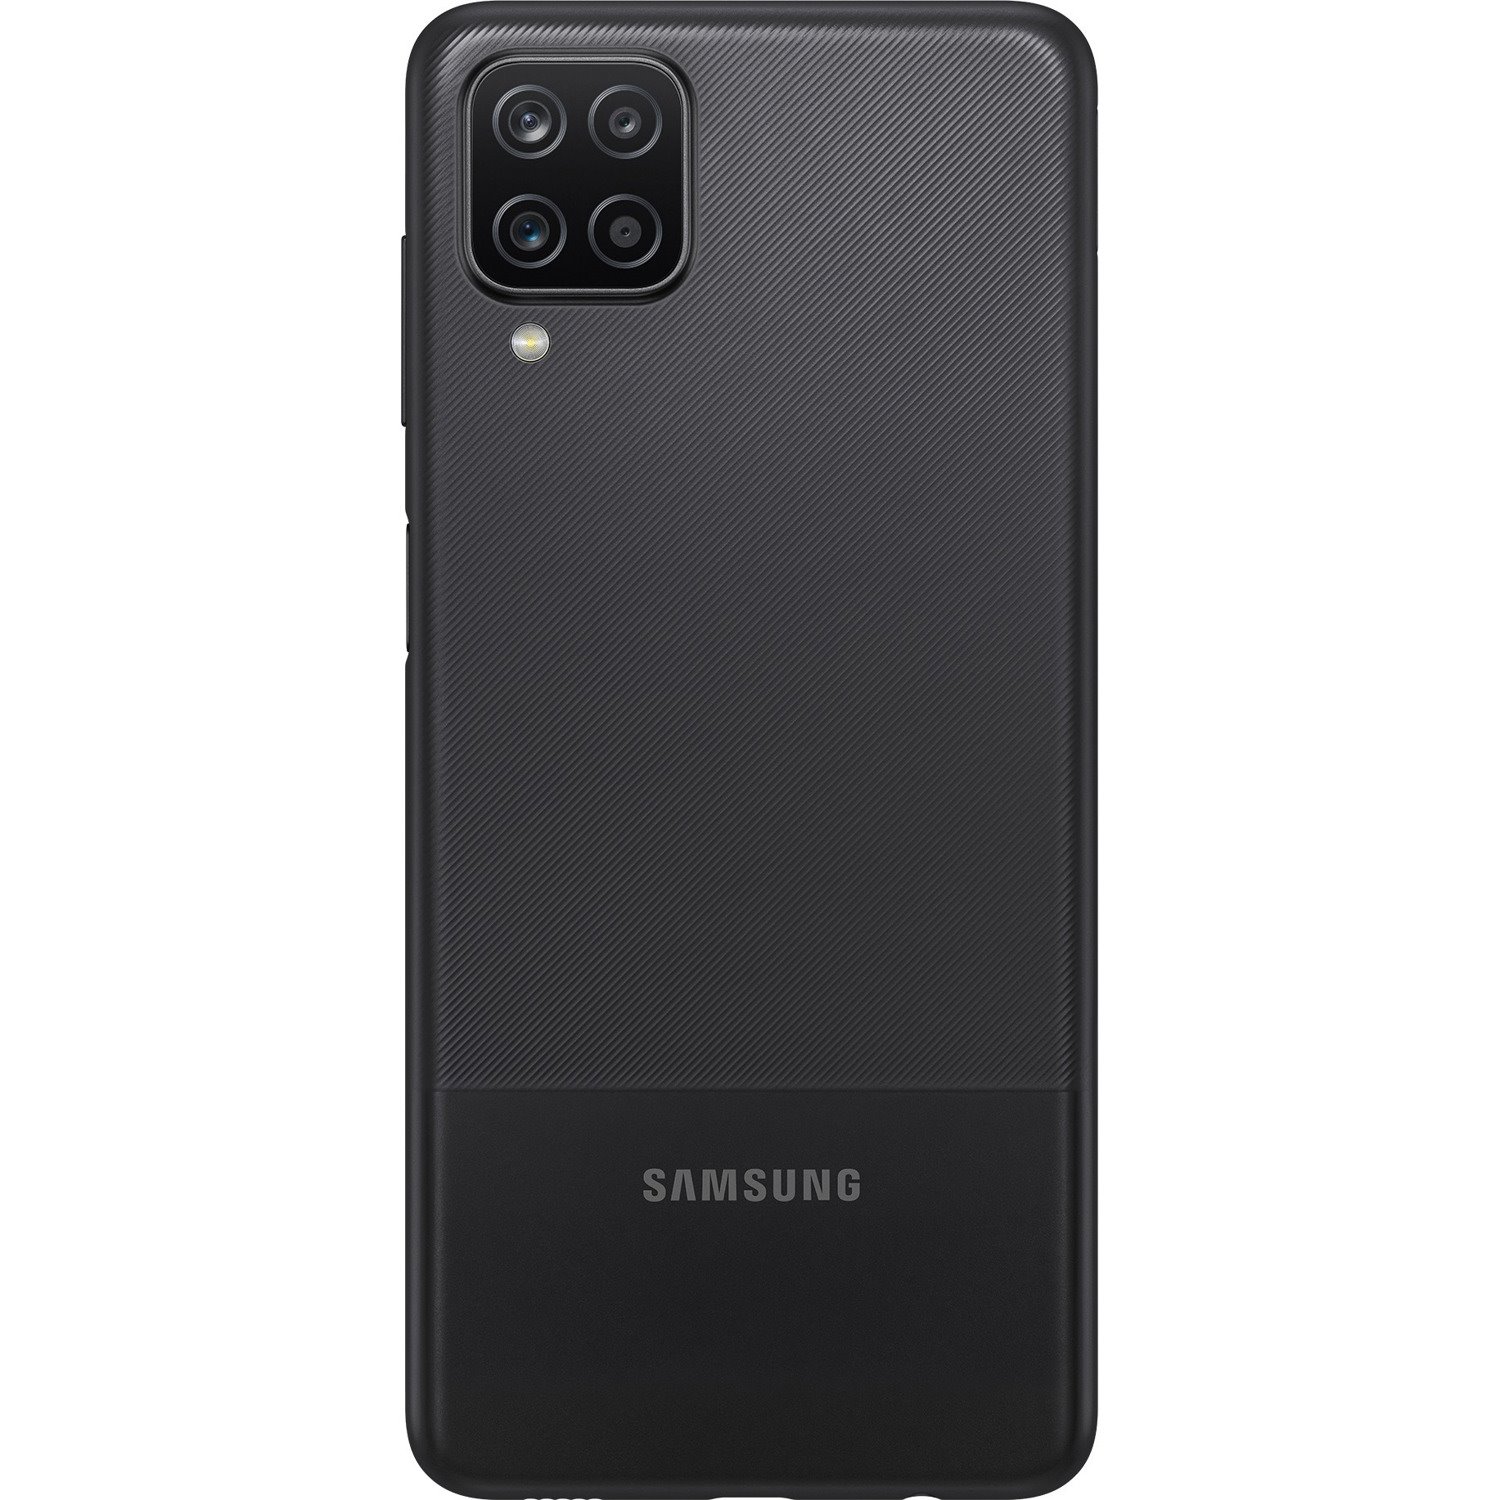 Samsung Galaxy A12 SM-A127F 128 GB Smartphone - 16.5 cm (6.5") Active Matrix TFT LCD HD+ 720 x 1600 - Octa-core (Cortex A53Quad-core (4 Core) 2.35 GHz + Cortex A53 Quad-core (4 Core) 1.80 GHz - 4 GB RAM - Android 10 - 4G - Black